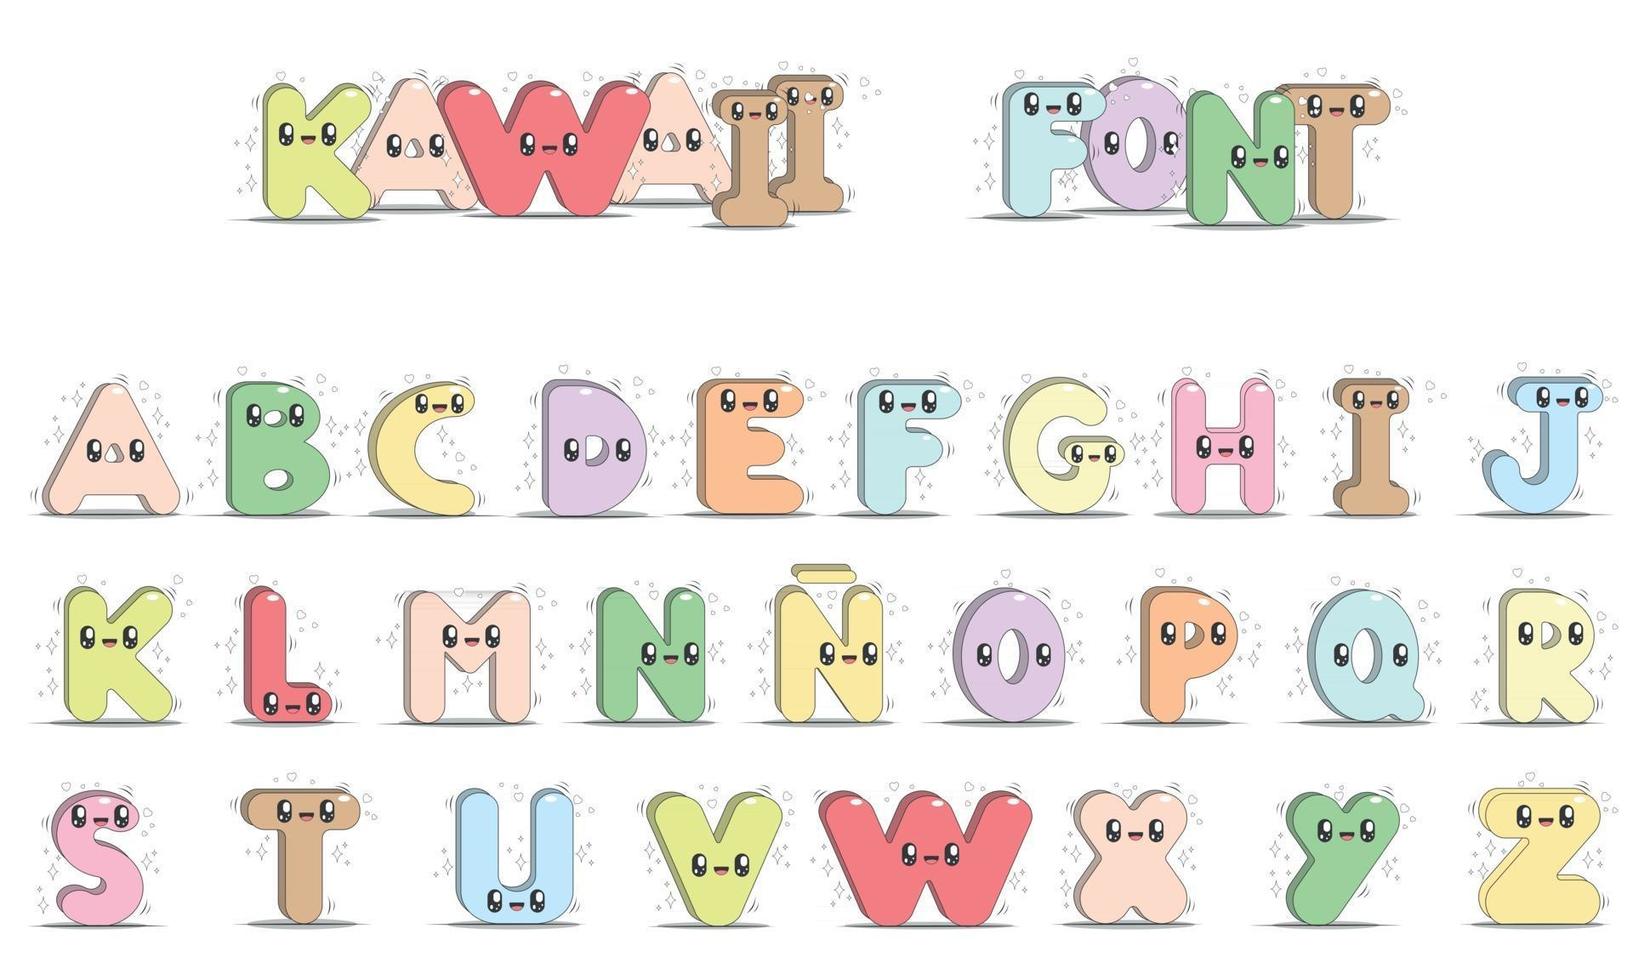 hoofdletters van het alfabet kawaii-stijl vector